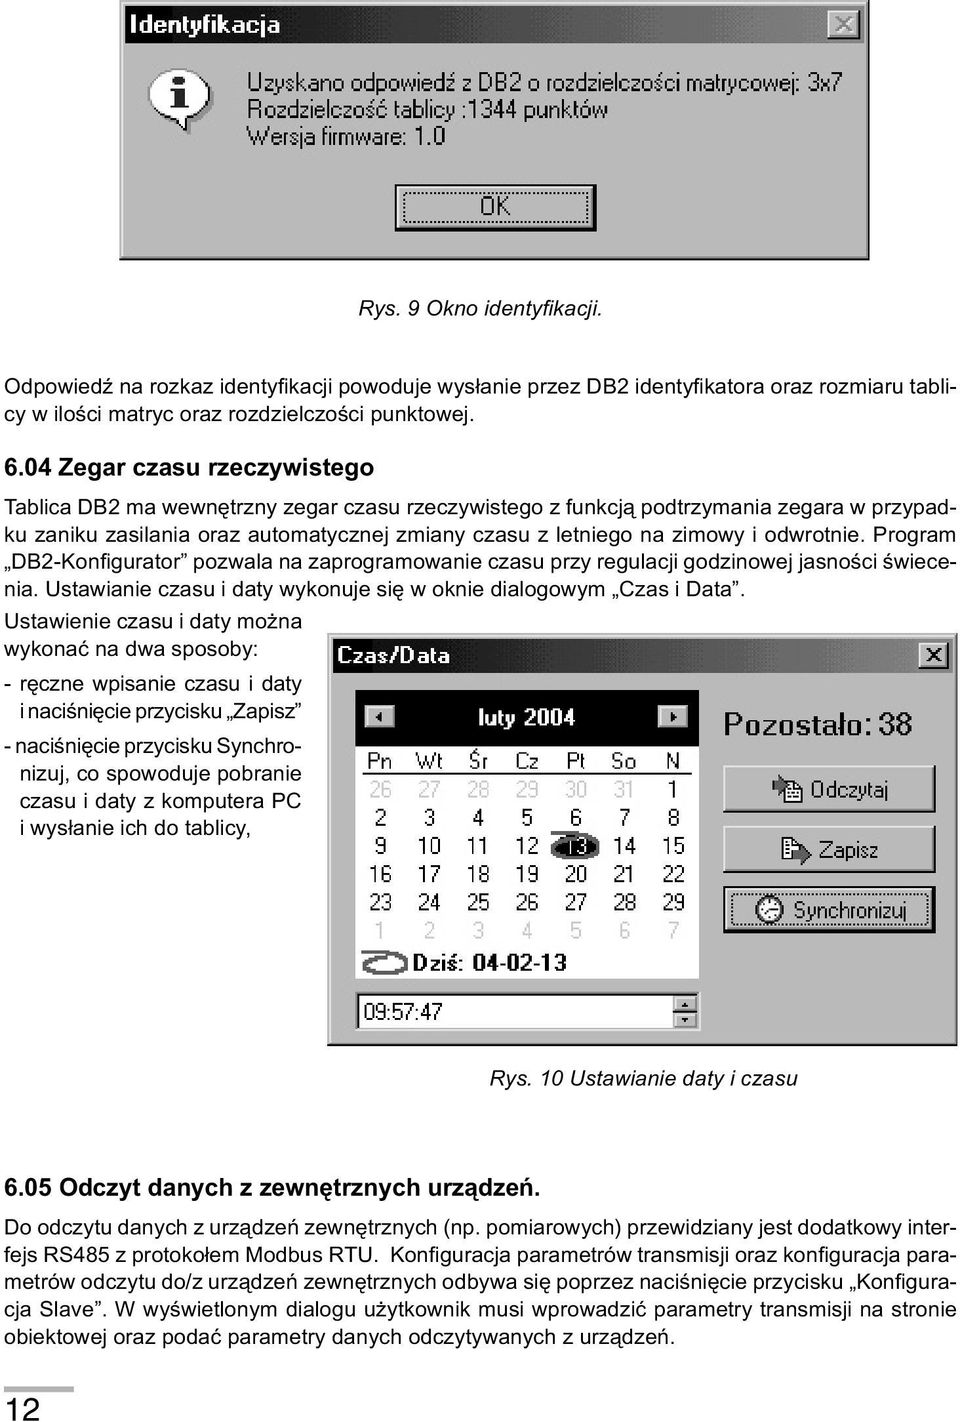 odwrotnie. Program DB2-Konfigurator pozwala na zaprogramowanie czasu przy regulacji godzinowej jasnoœci œwiecenia. Ustawianie czasu i daty wykonuje siê w oknie dialogowym Czas i Data.